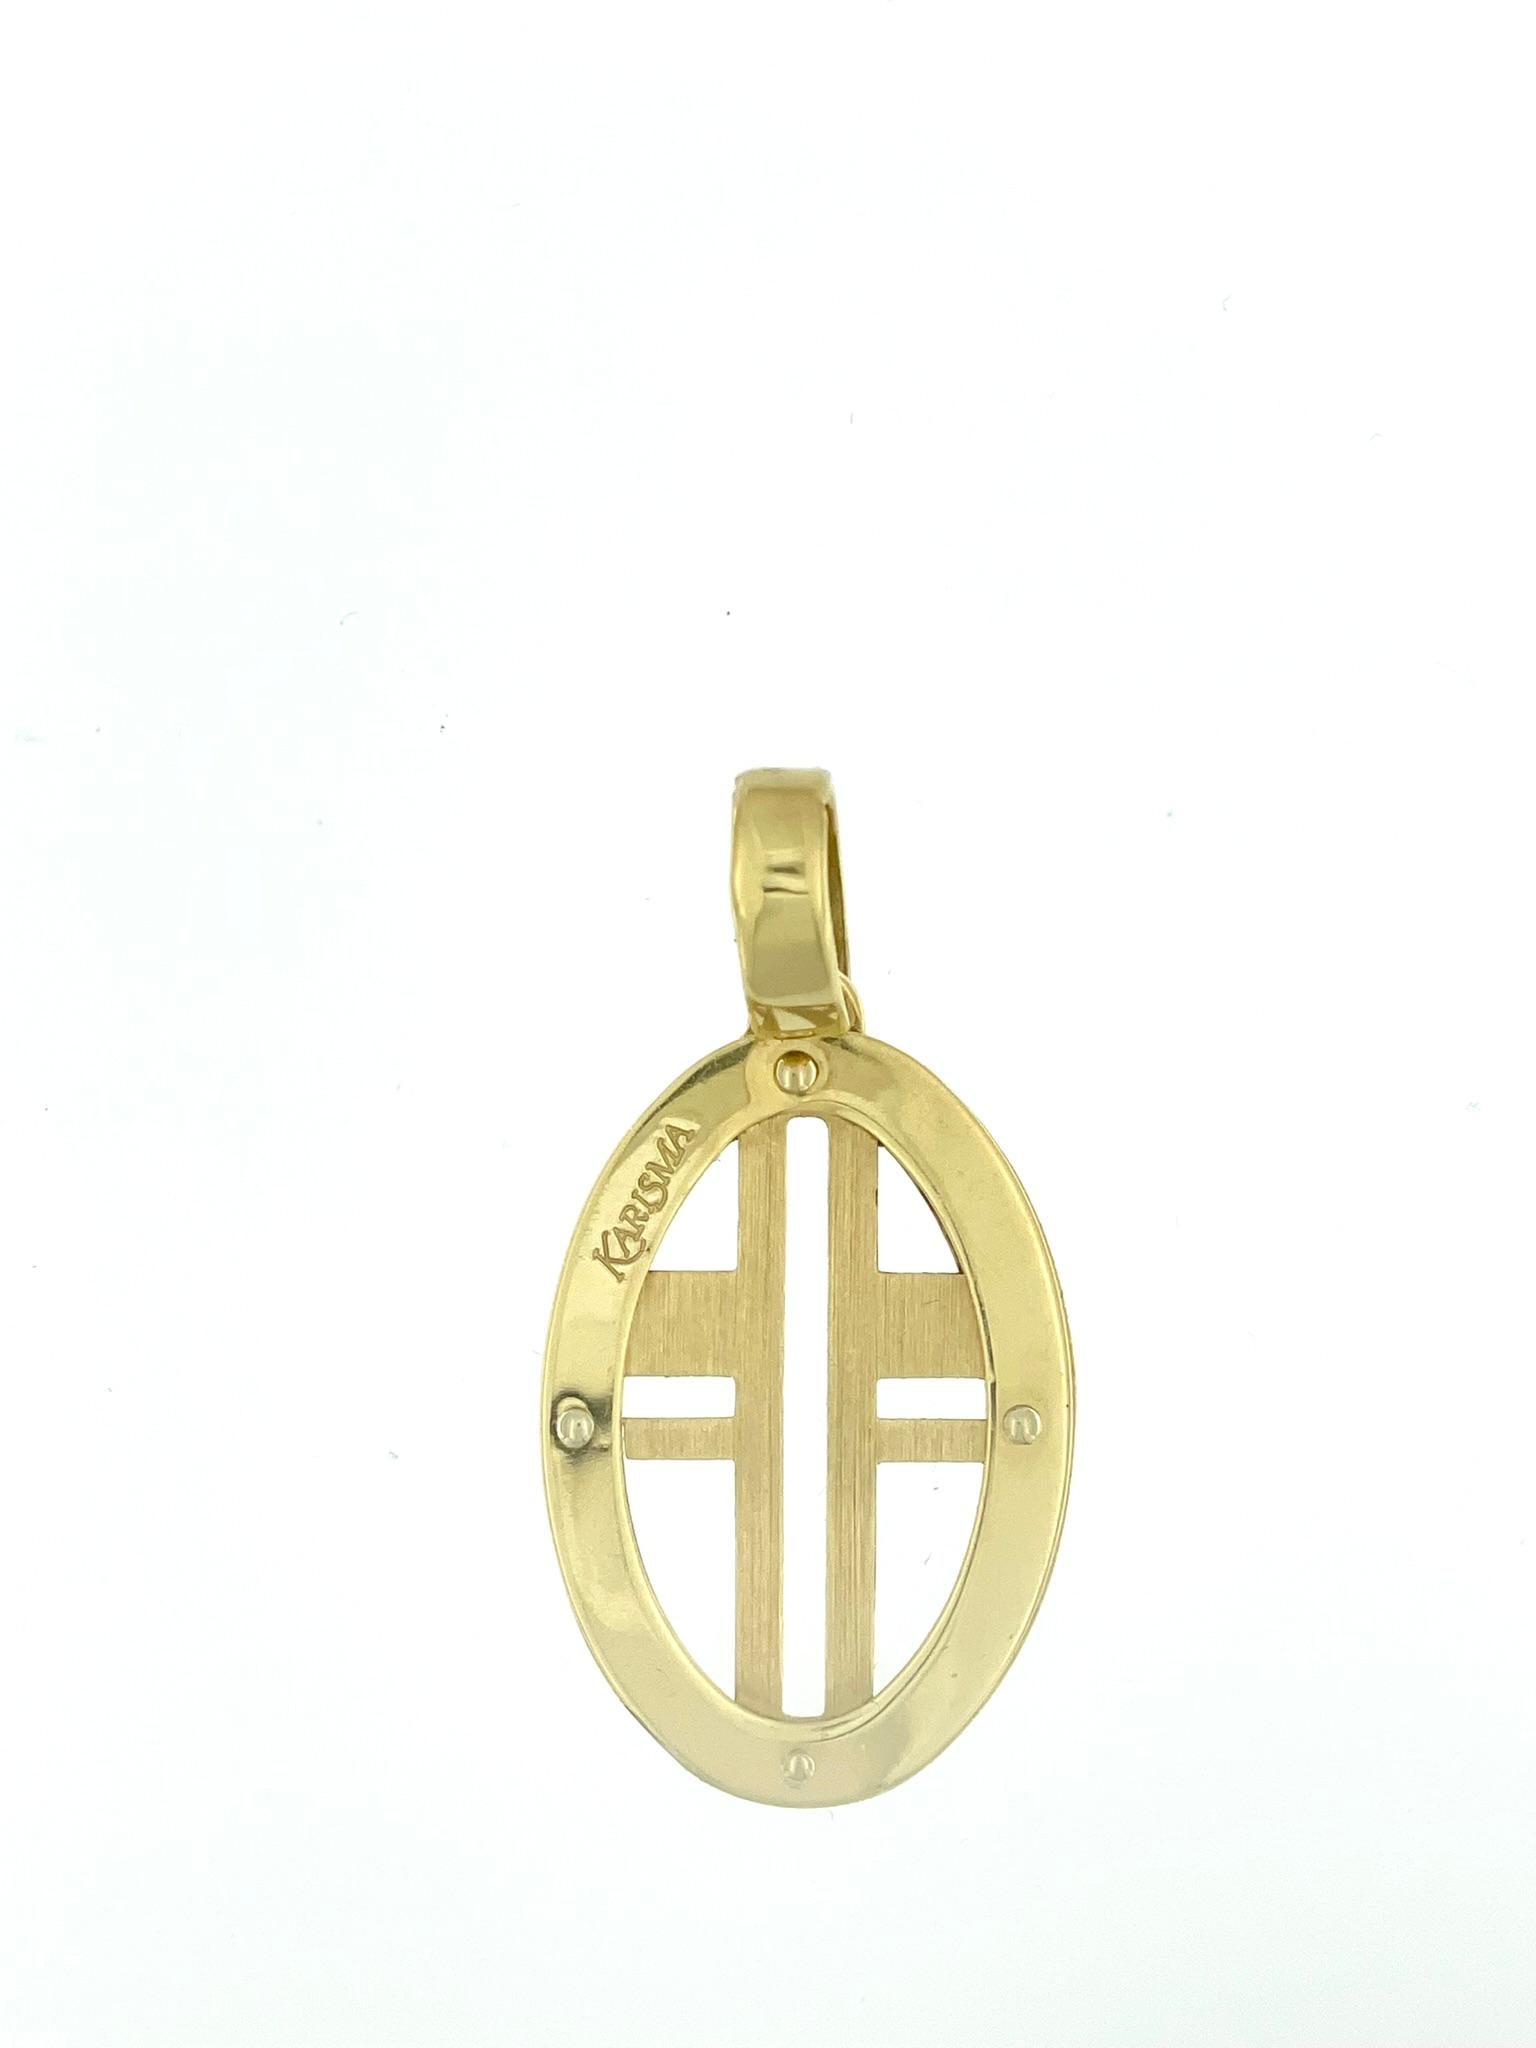 La croix italienne moderne en or jaune 18 carats de Karisma est un bijou contemporain et élégant qui allie un savoir-faire raffiné à un design épuré. La croix est ingénieusement incorporée dans le pendentif, créant une esthétique distinctive et